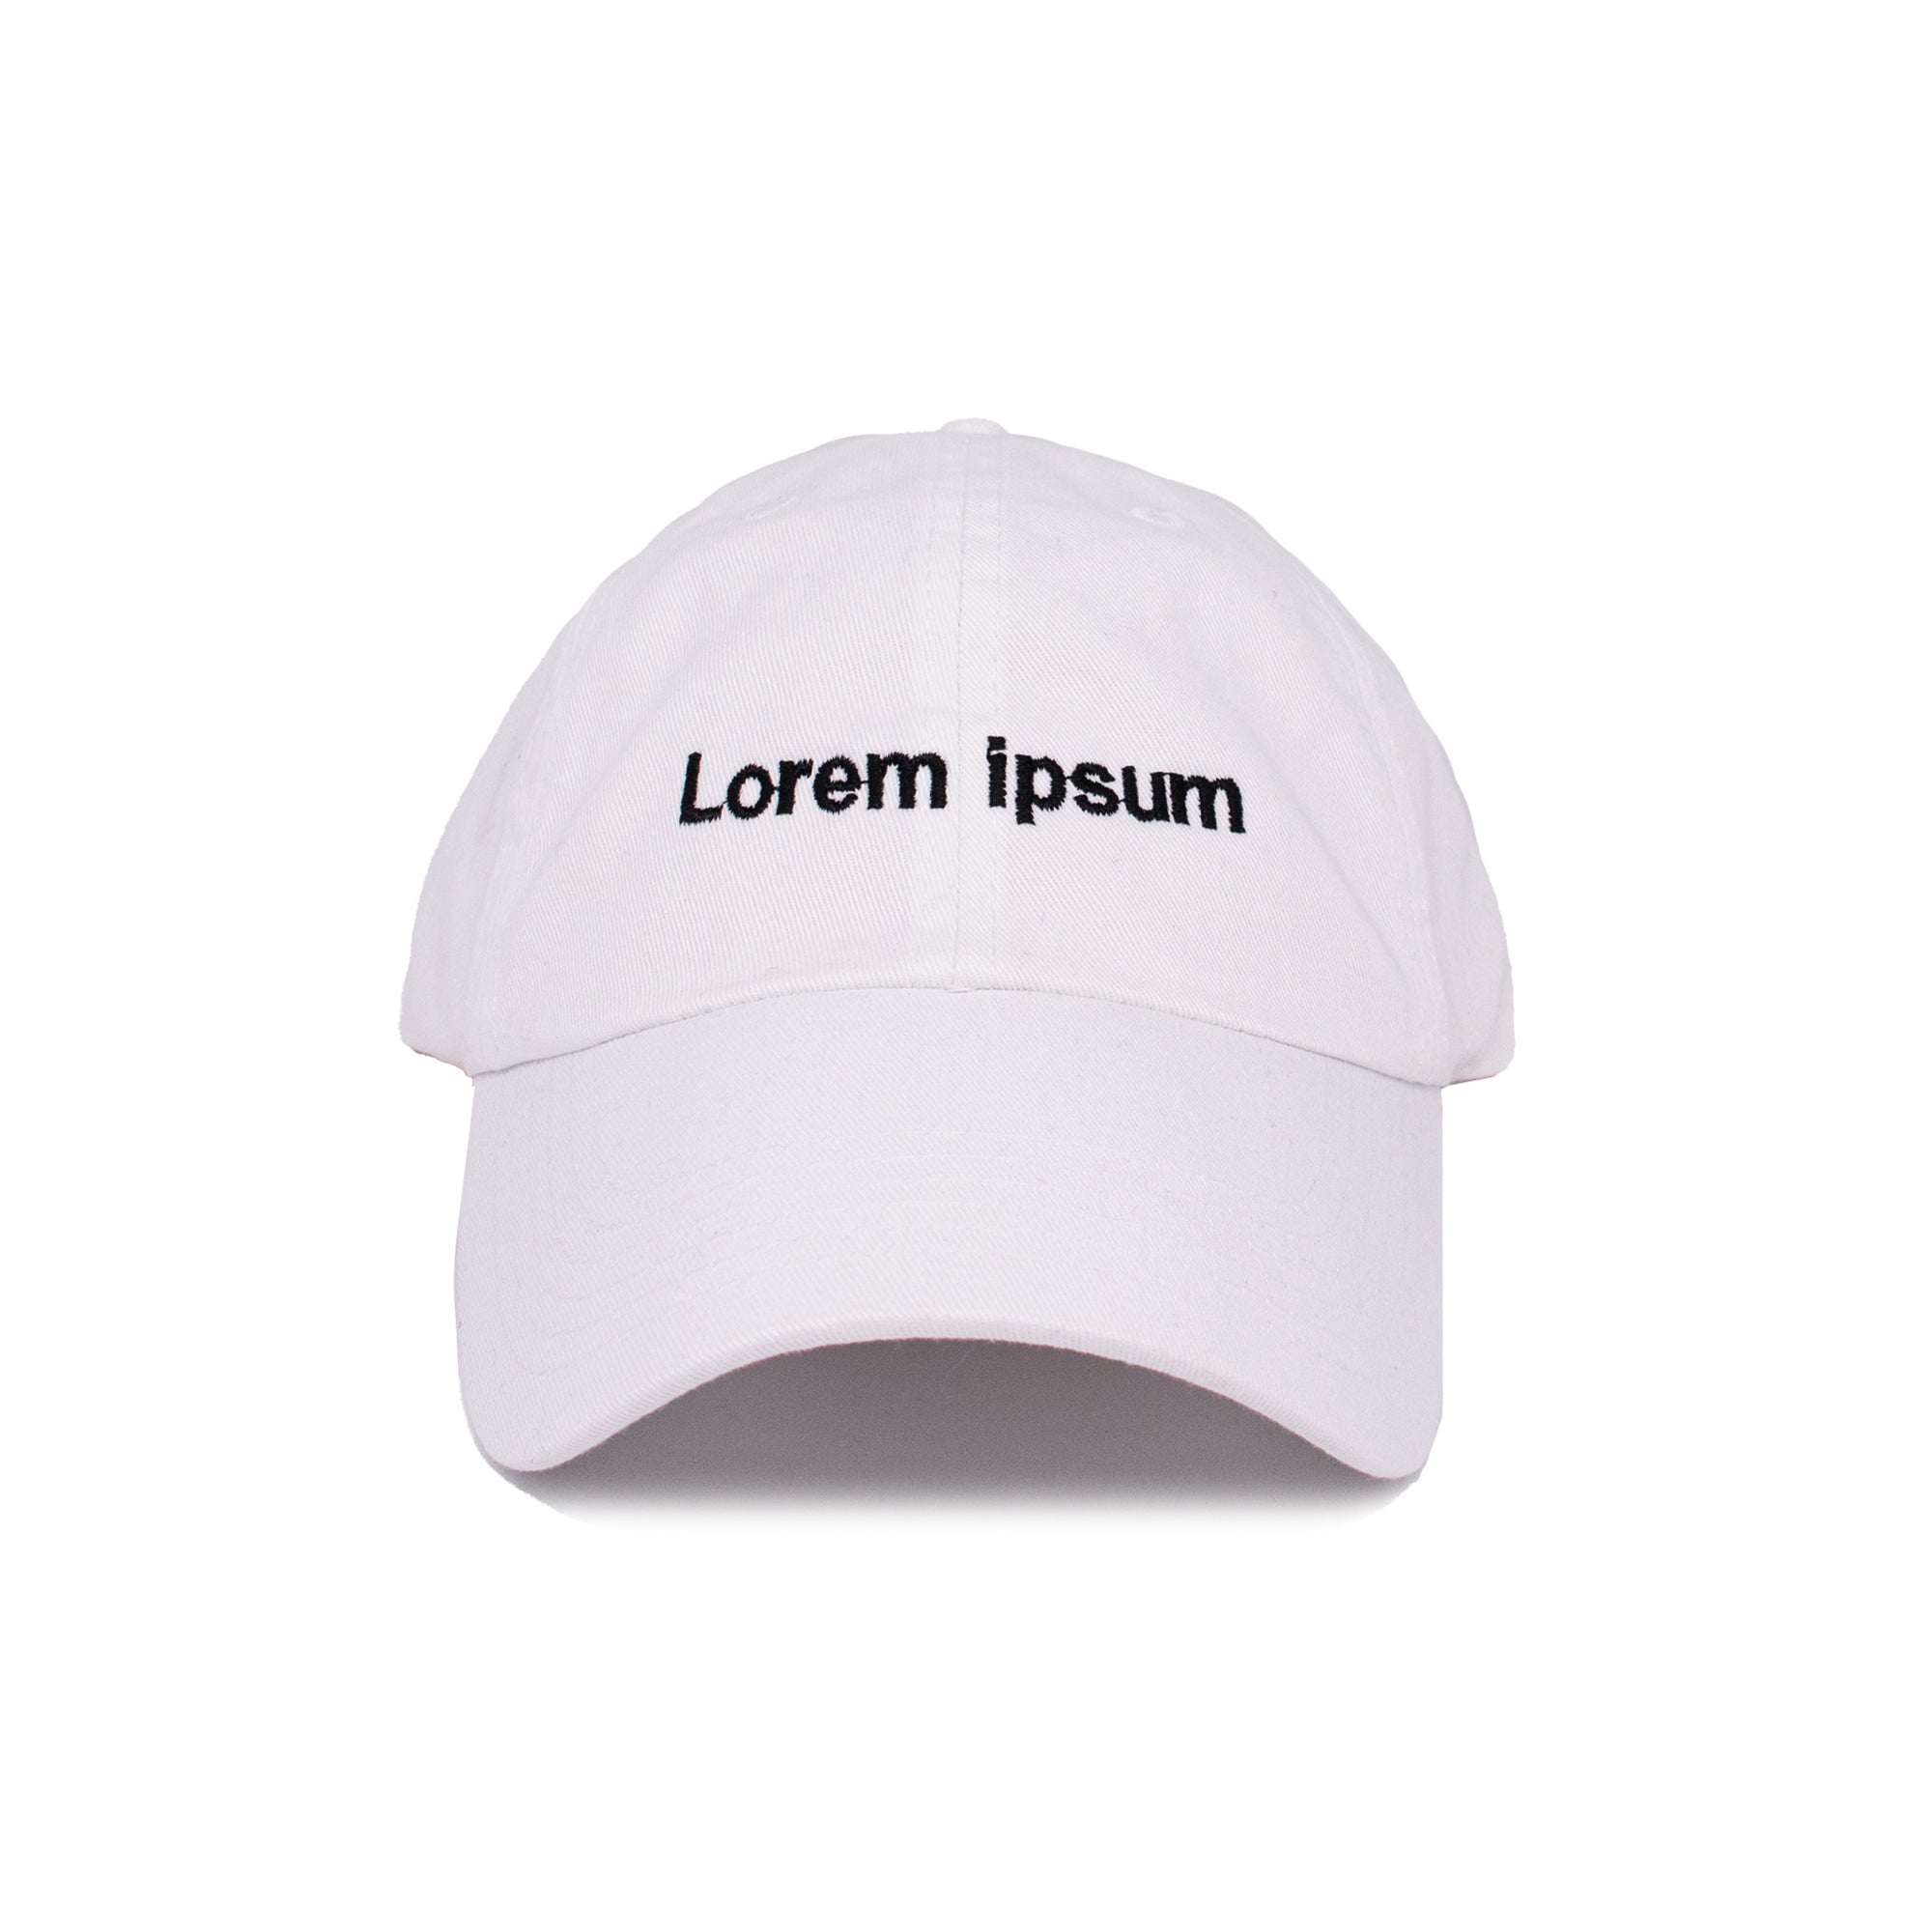 LOREM IPSUM HAT